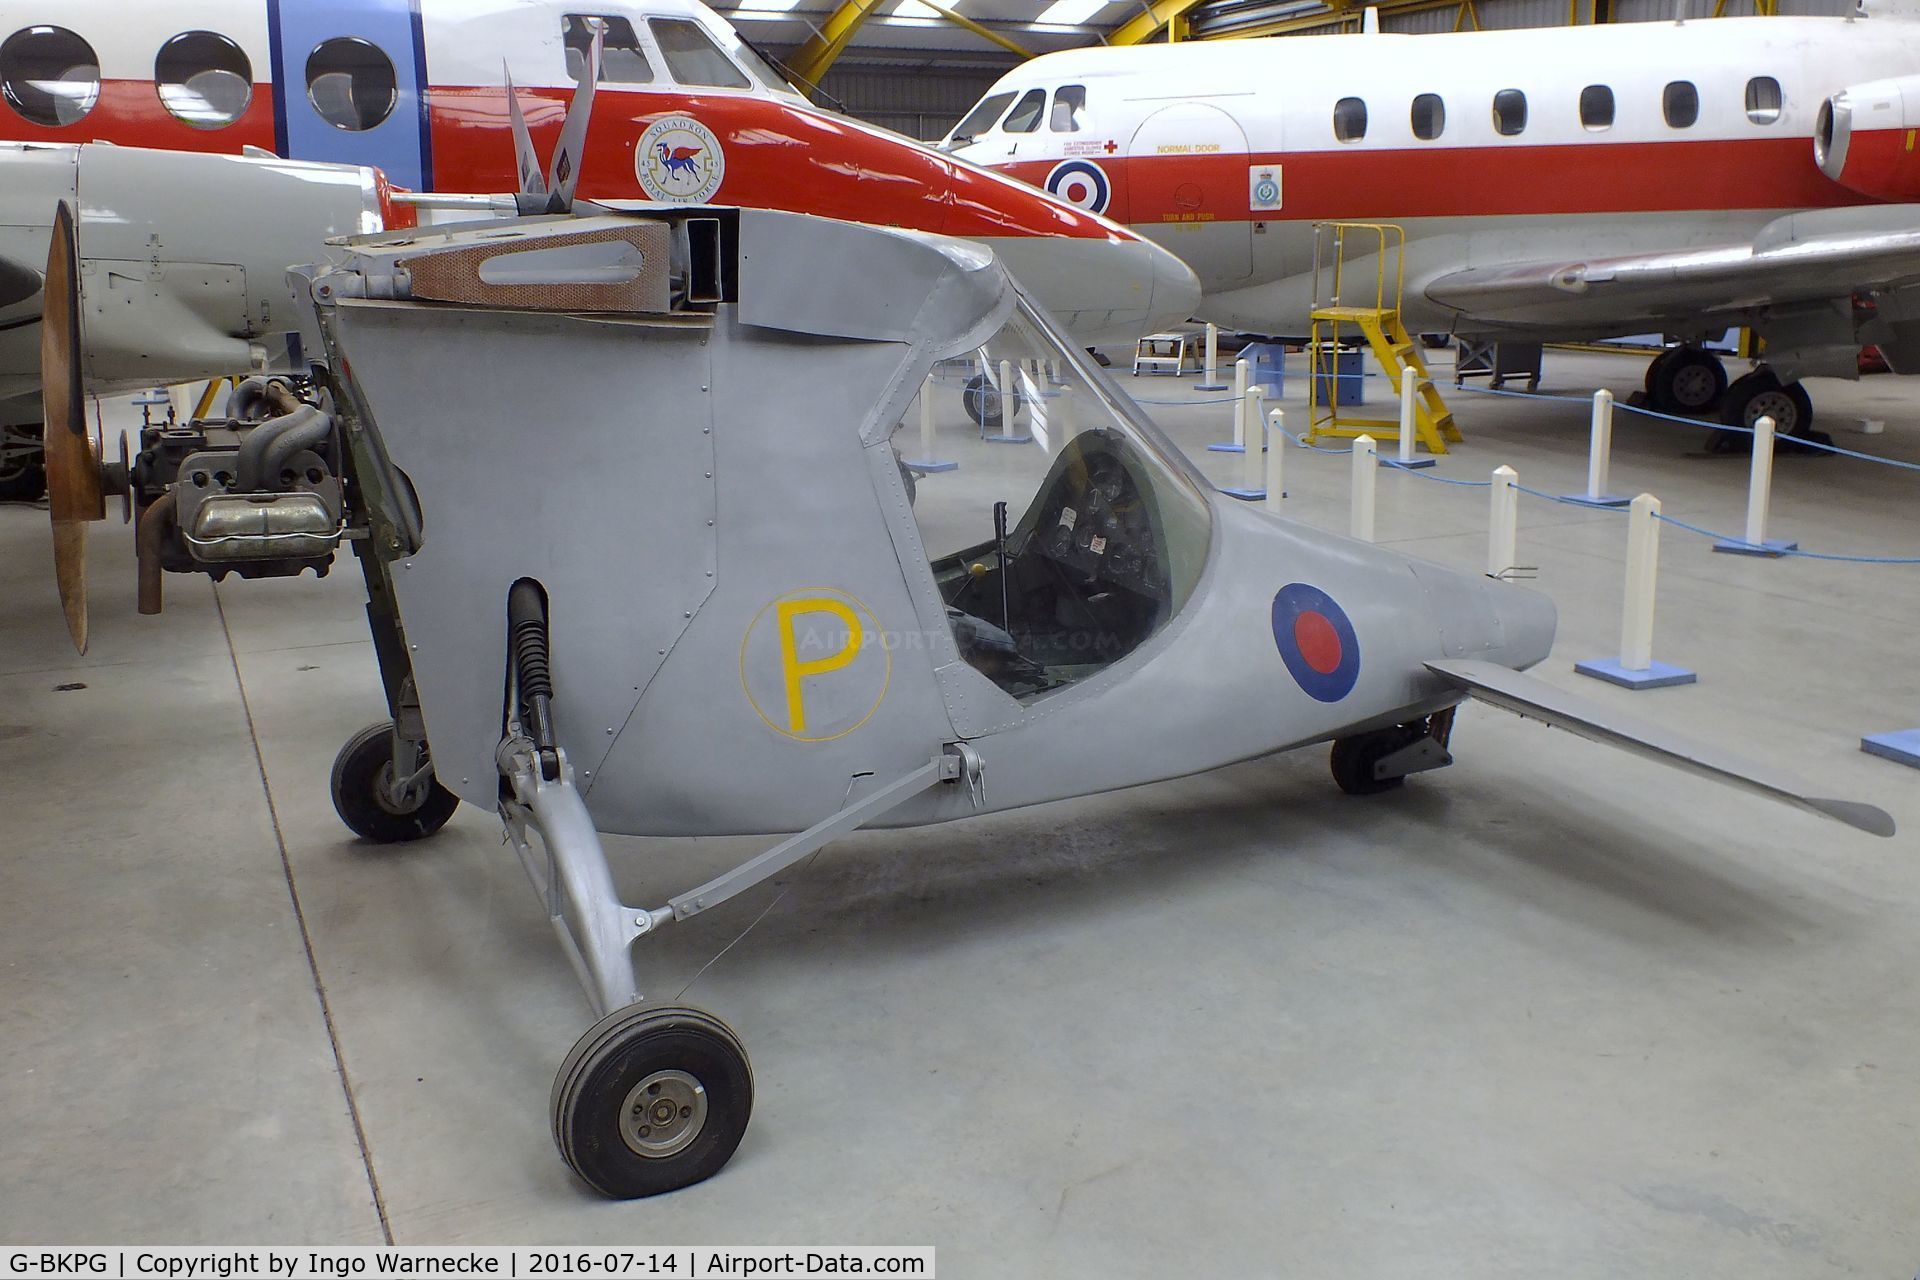 G-BKPG, Luscombe P3 Rattler Strike C/N 003, Luscombe P3 Rattler Strike (minus wings) at the Newark Air Museum